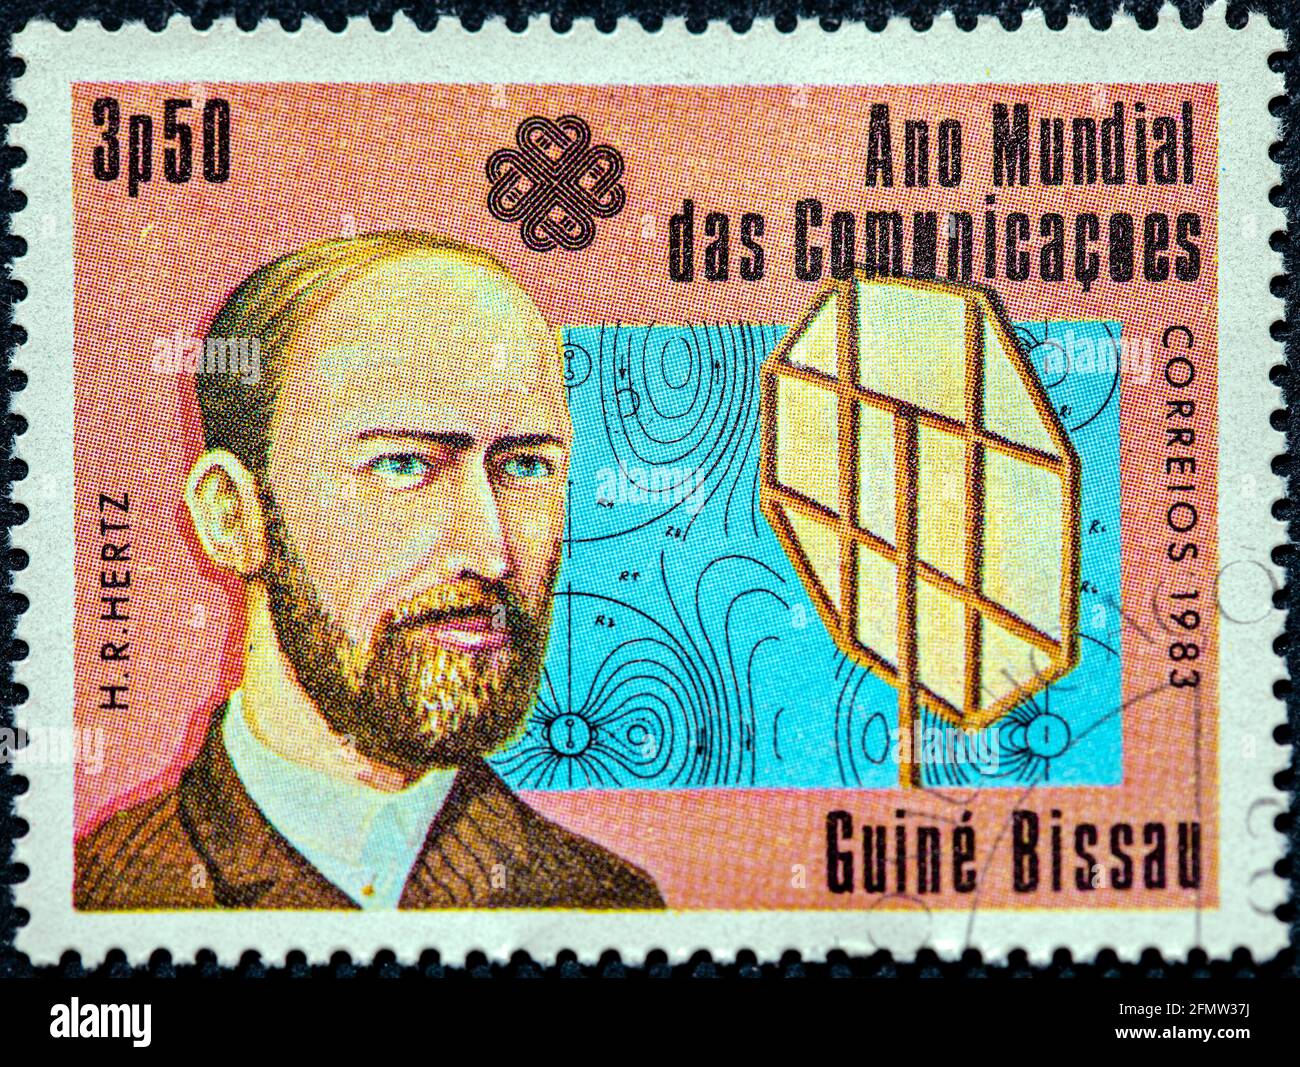 GUINÉE - BISSAU - VERS 1983: Un timbre imprimé en Guinée-Bissau consacré à l'année mondiale des communications montre un physicien allemand Heinrich Hertz circ Banque D'Images